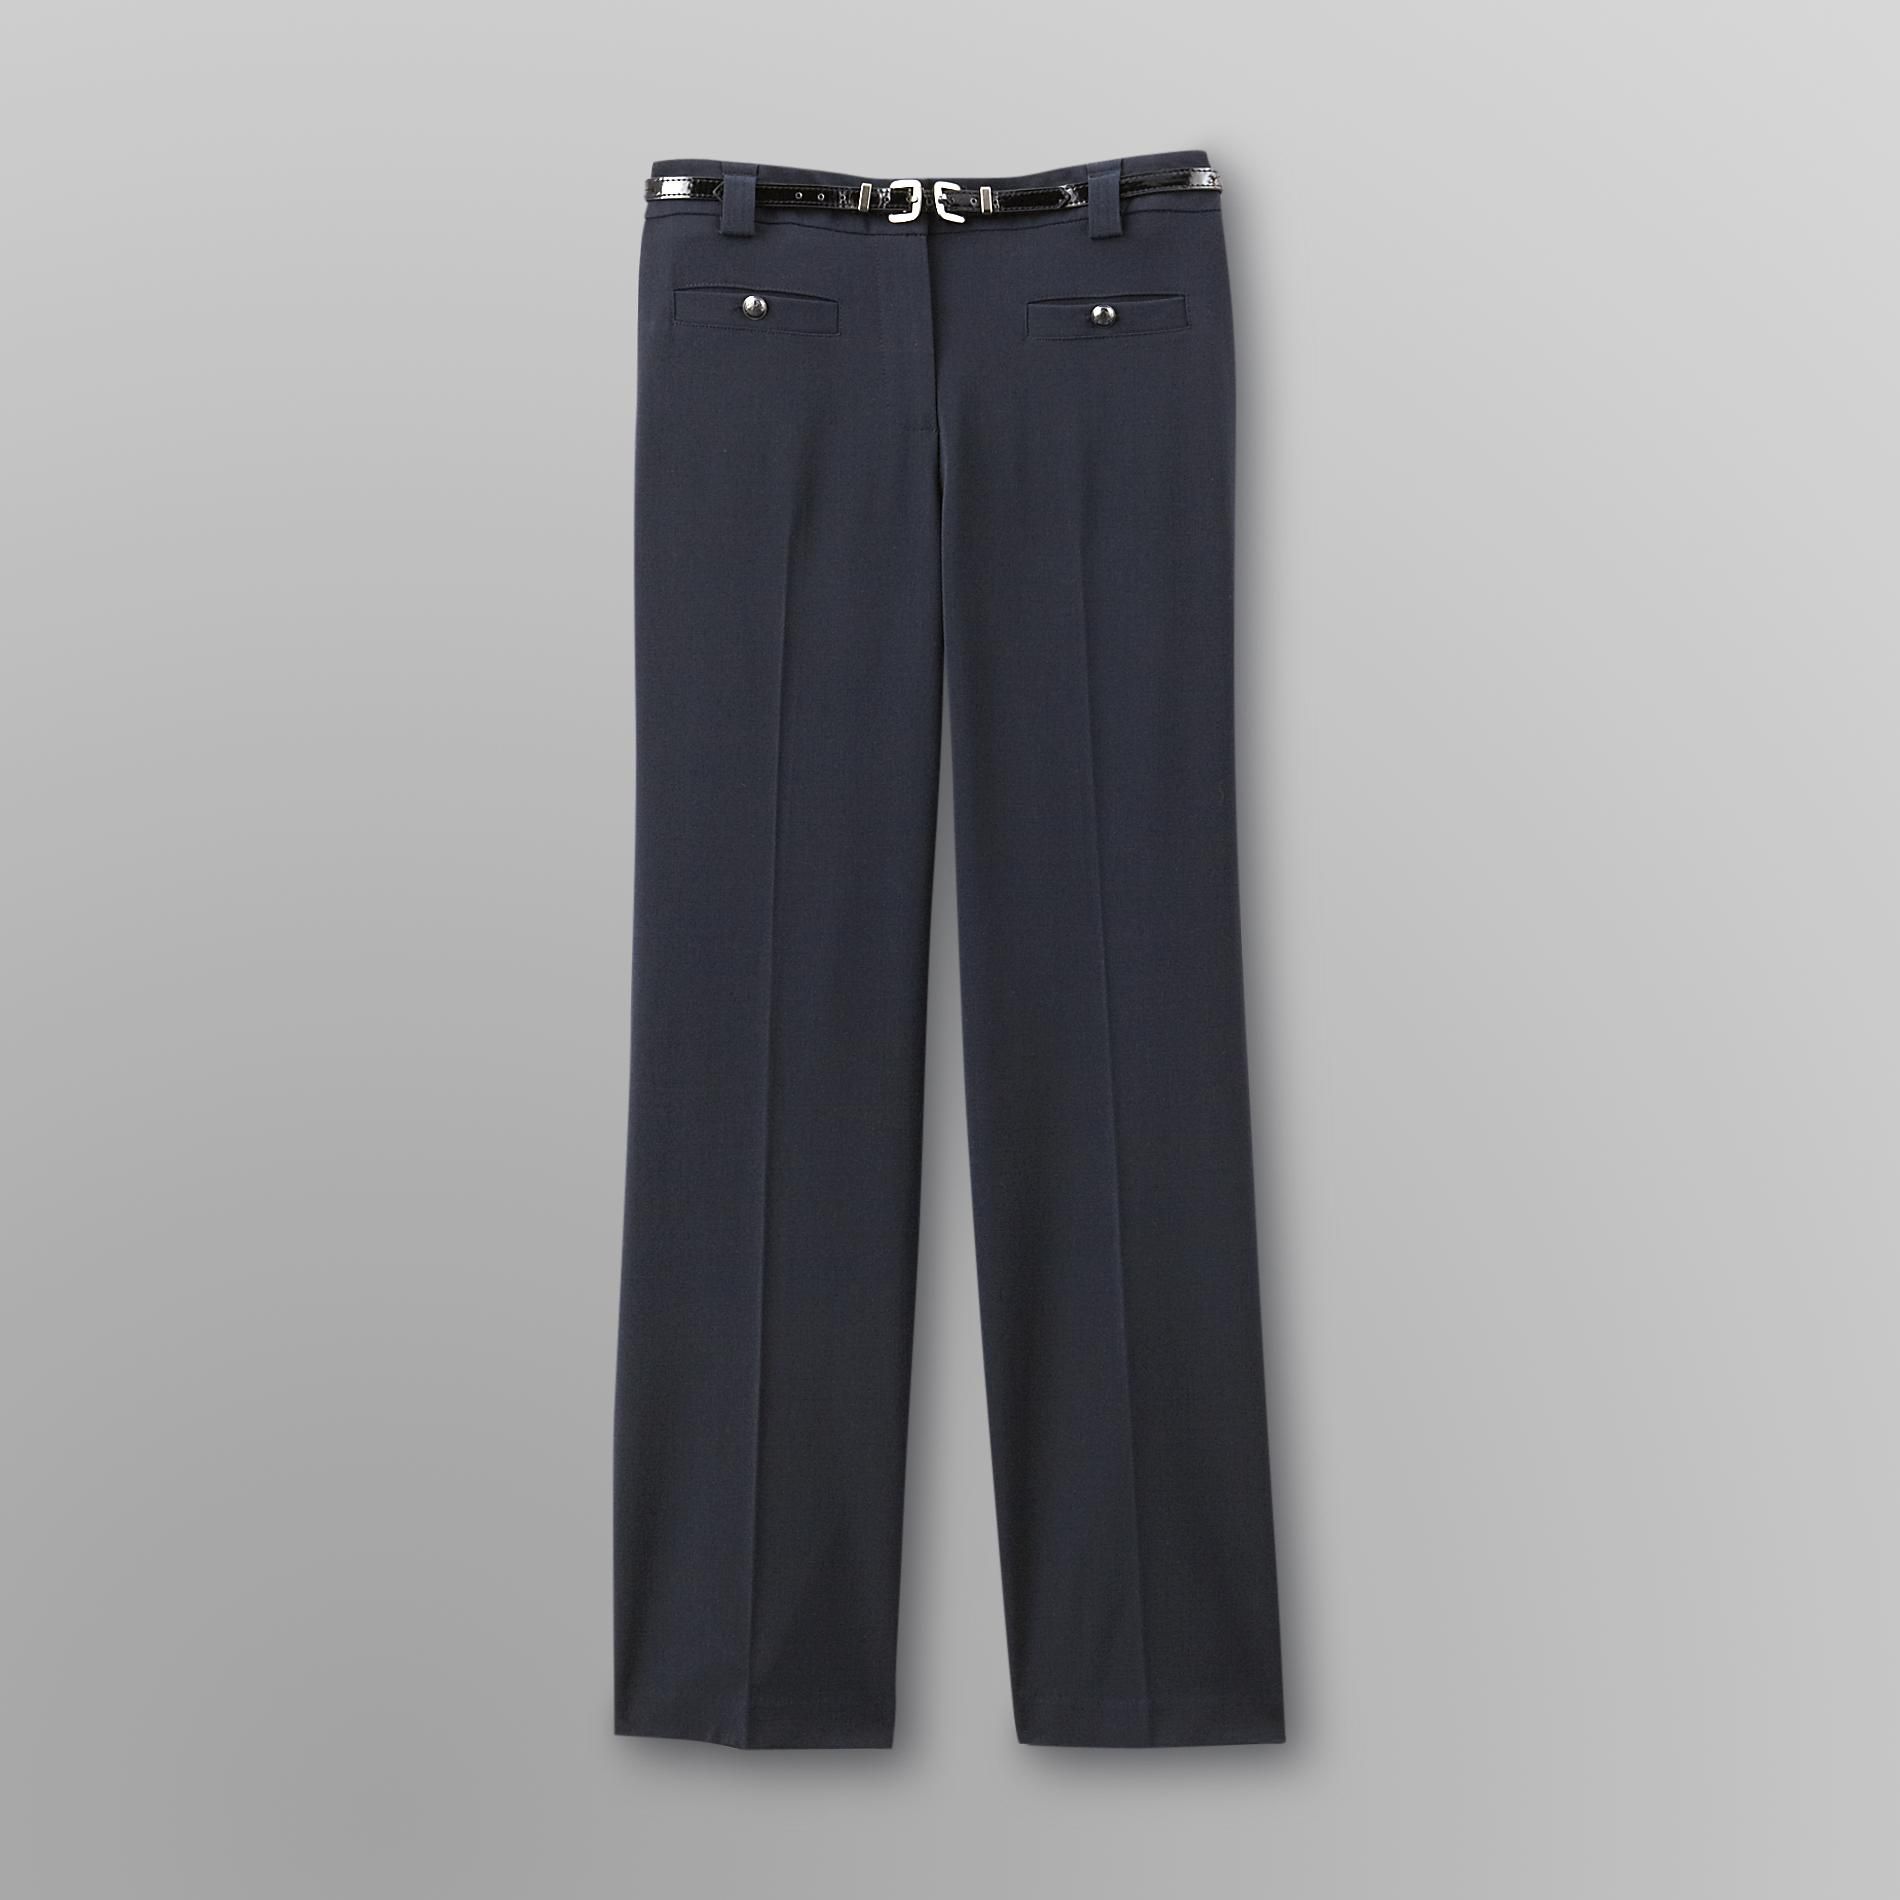 Covington Women's Petite Belted Pants